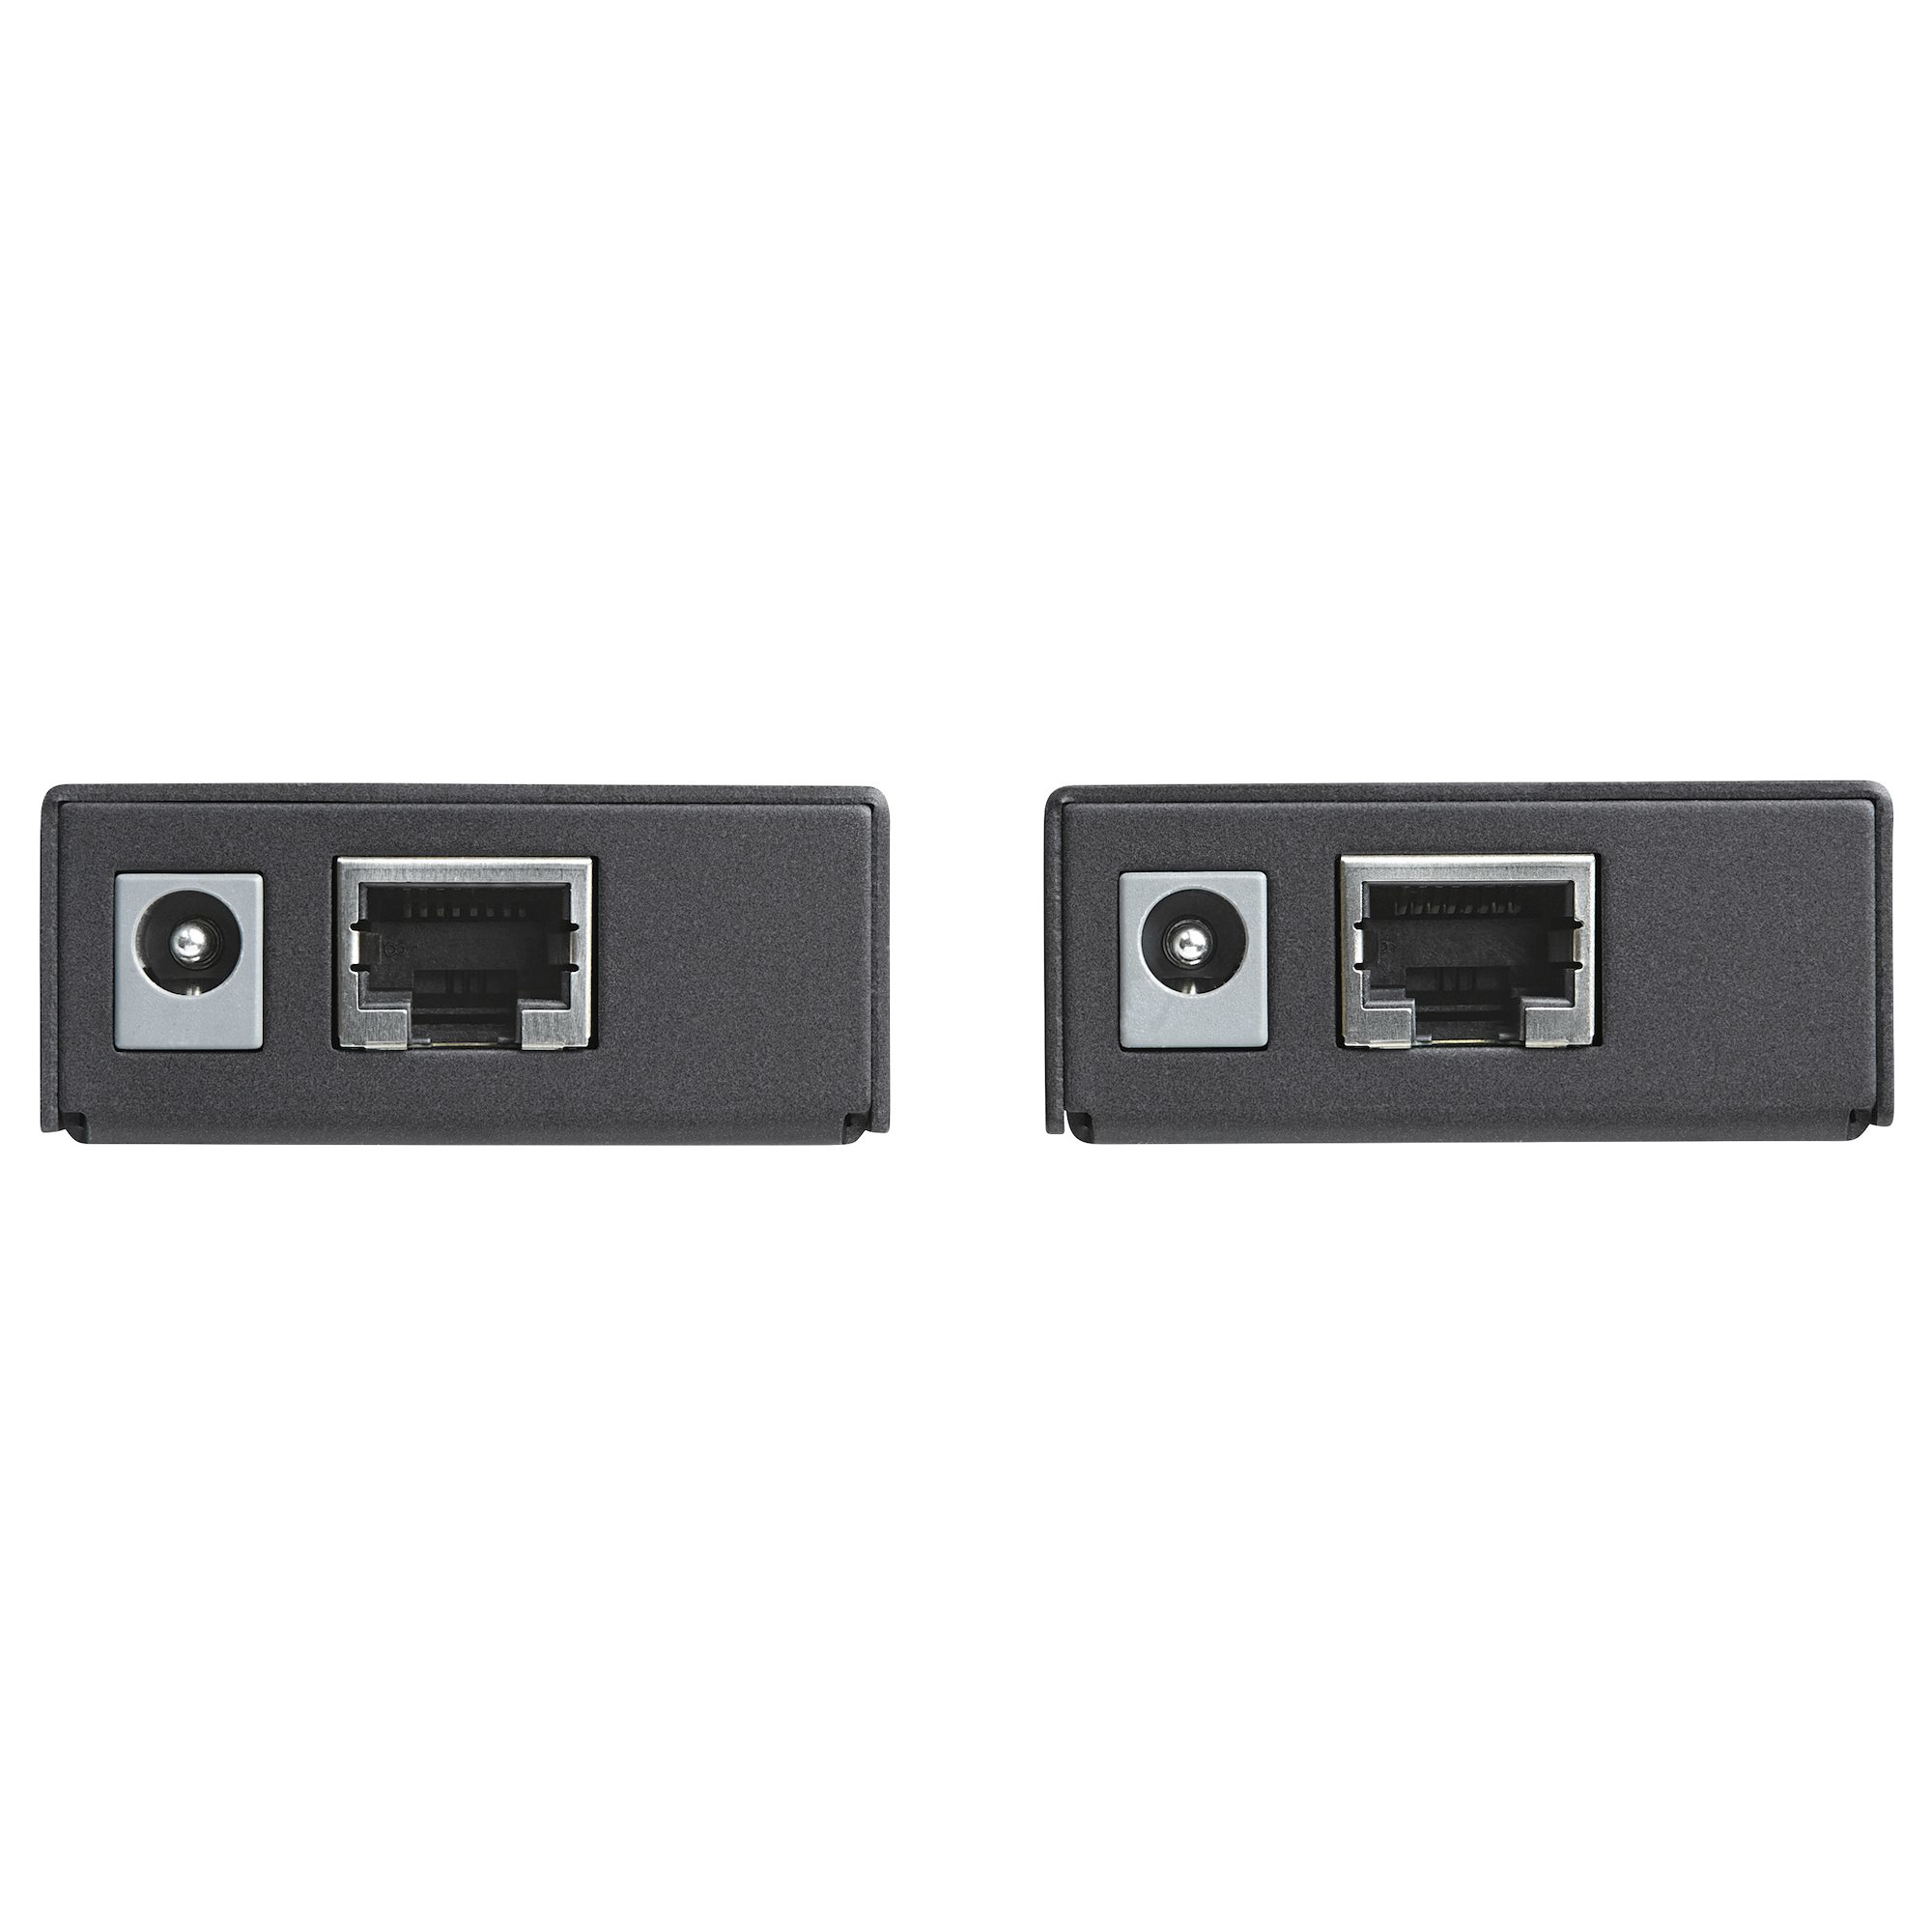 Prolongateur USB 2.0 4 Ports - Extendeur USB sur Cat5/Cat6 Jusqu'à 40m -  Prolongateur Compact USB 2.0 sur Ethernet